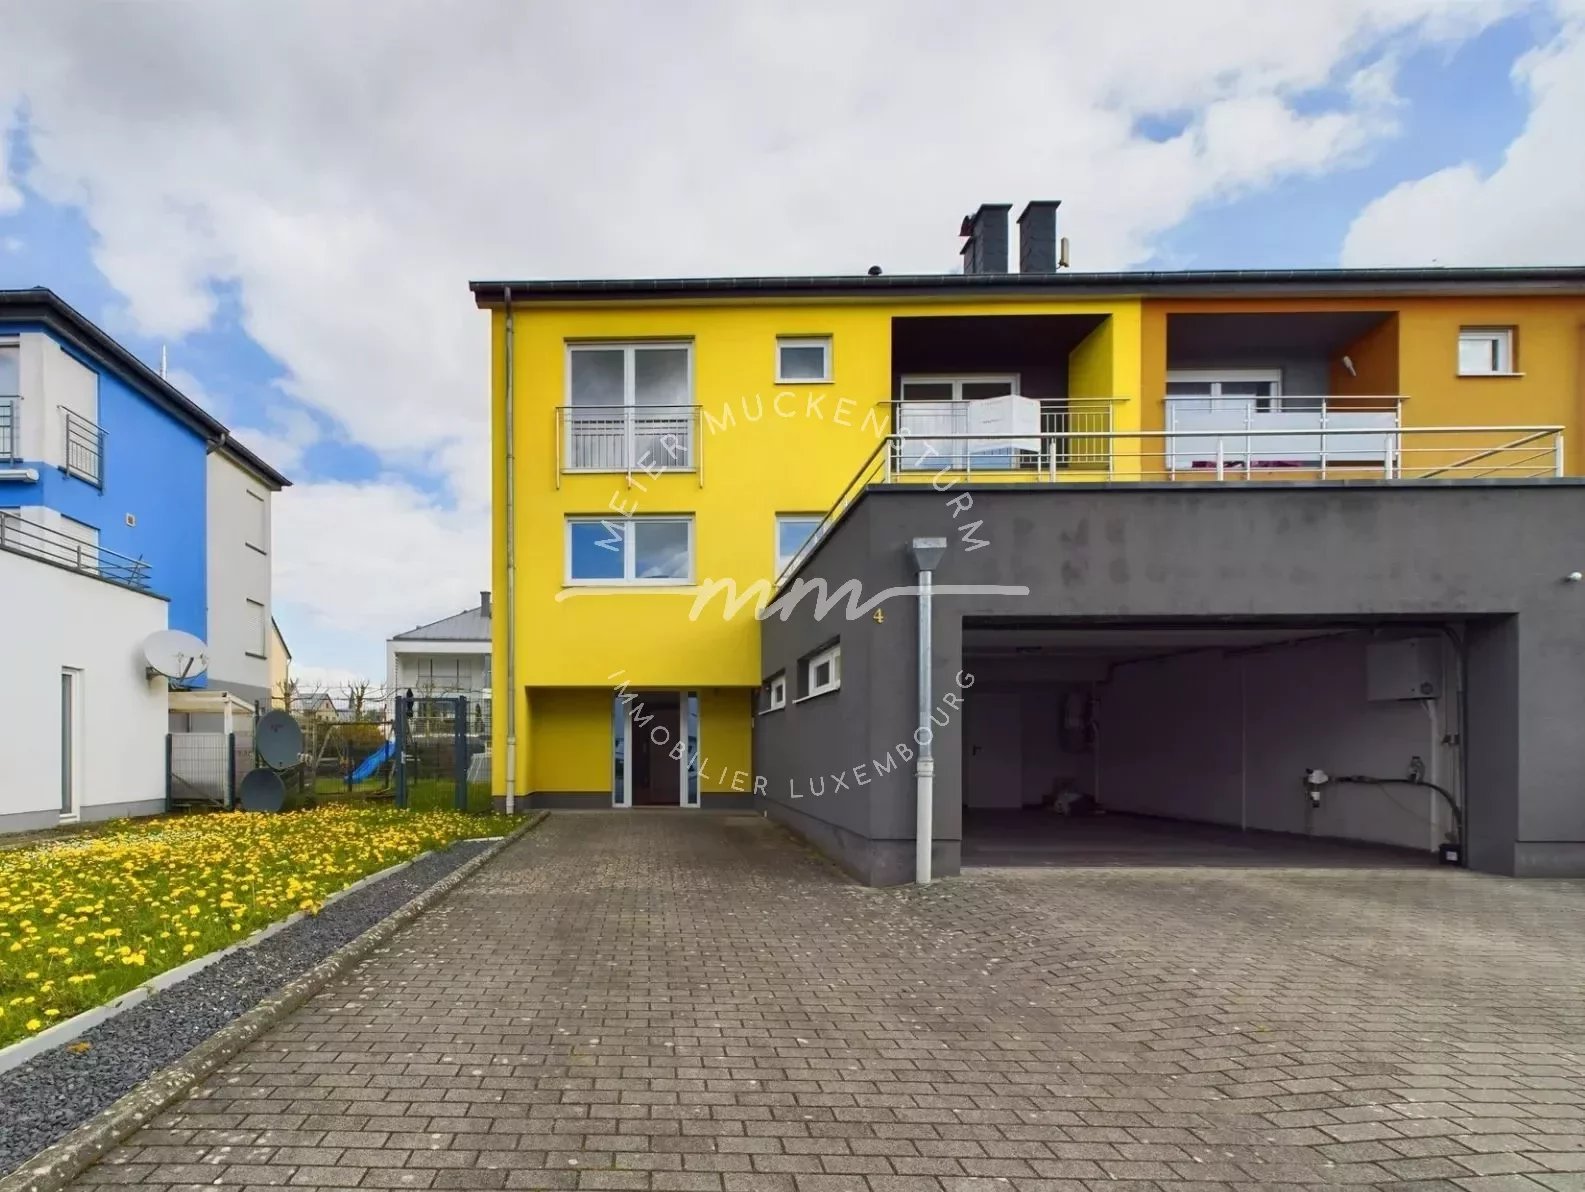 House for Sale - Mertzig